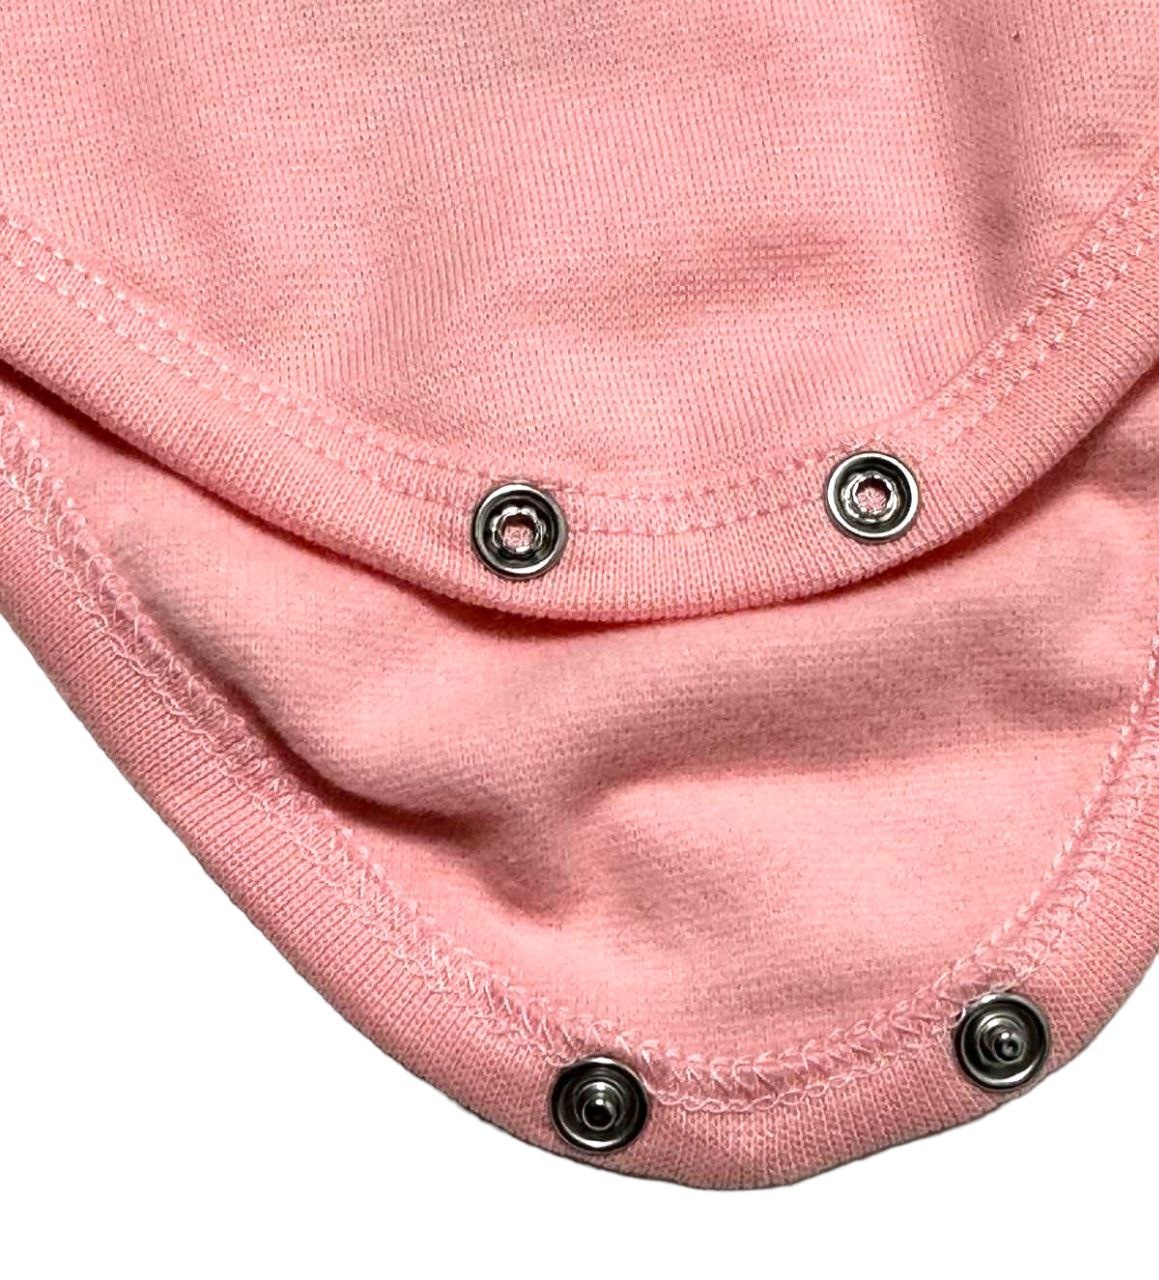 Комплект боди с брючками начесной стрейч интерлок розового цвета, Розовый, 3-6 месяца, 68см